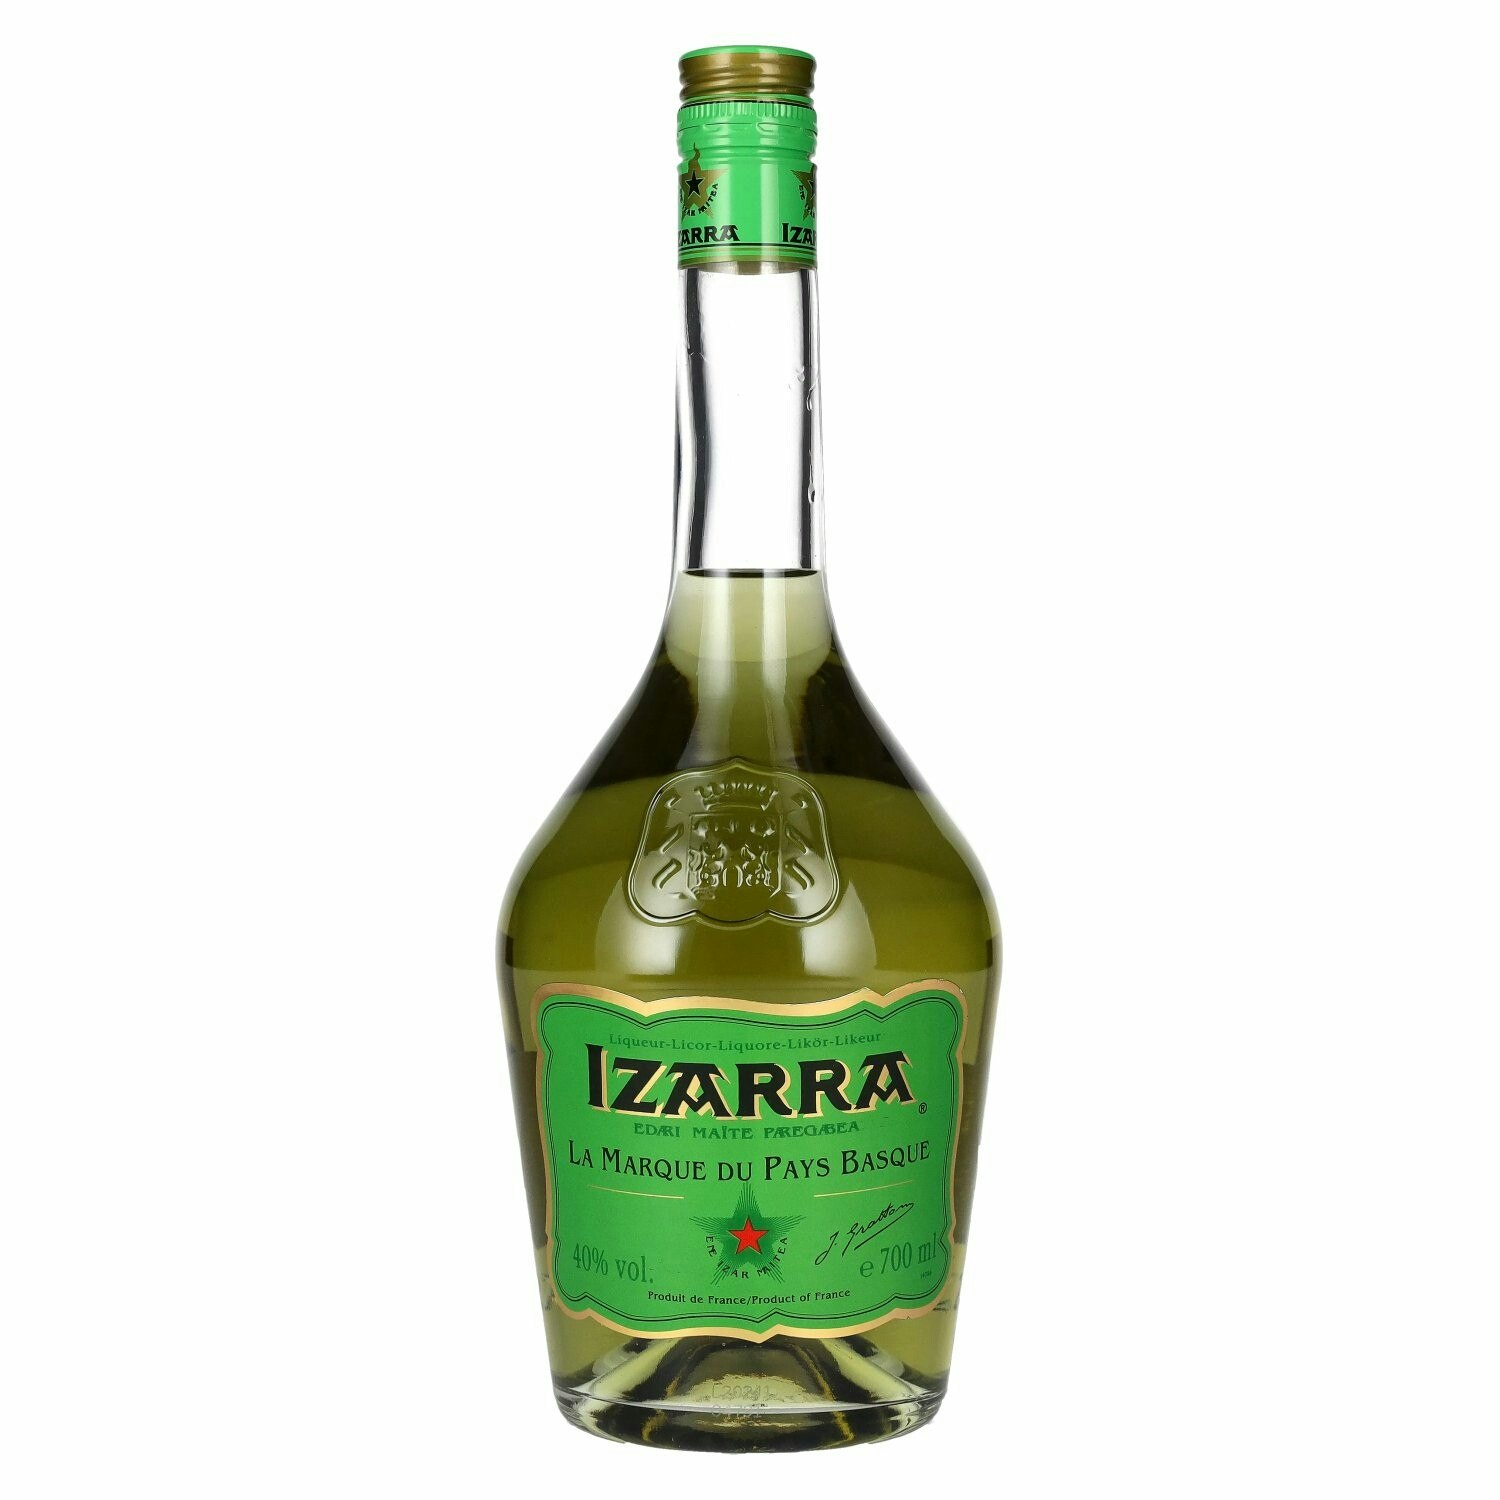 Izarra Vert Liqueur 40% Vol. 0,7l